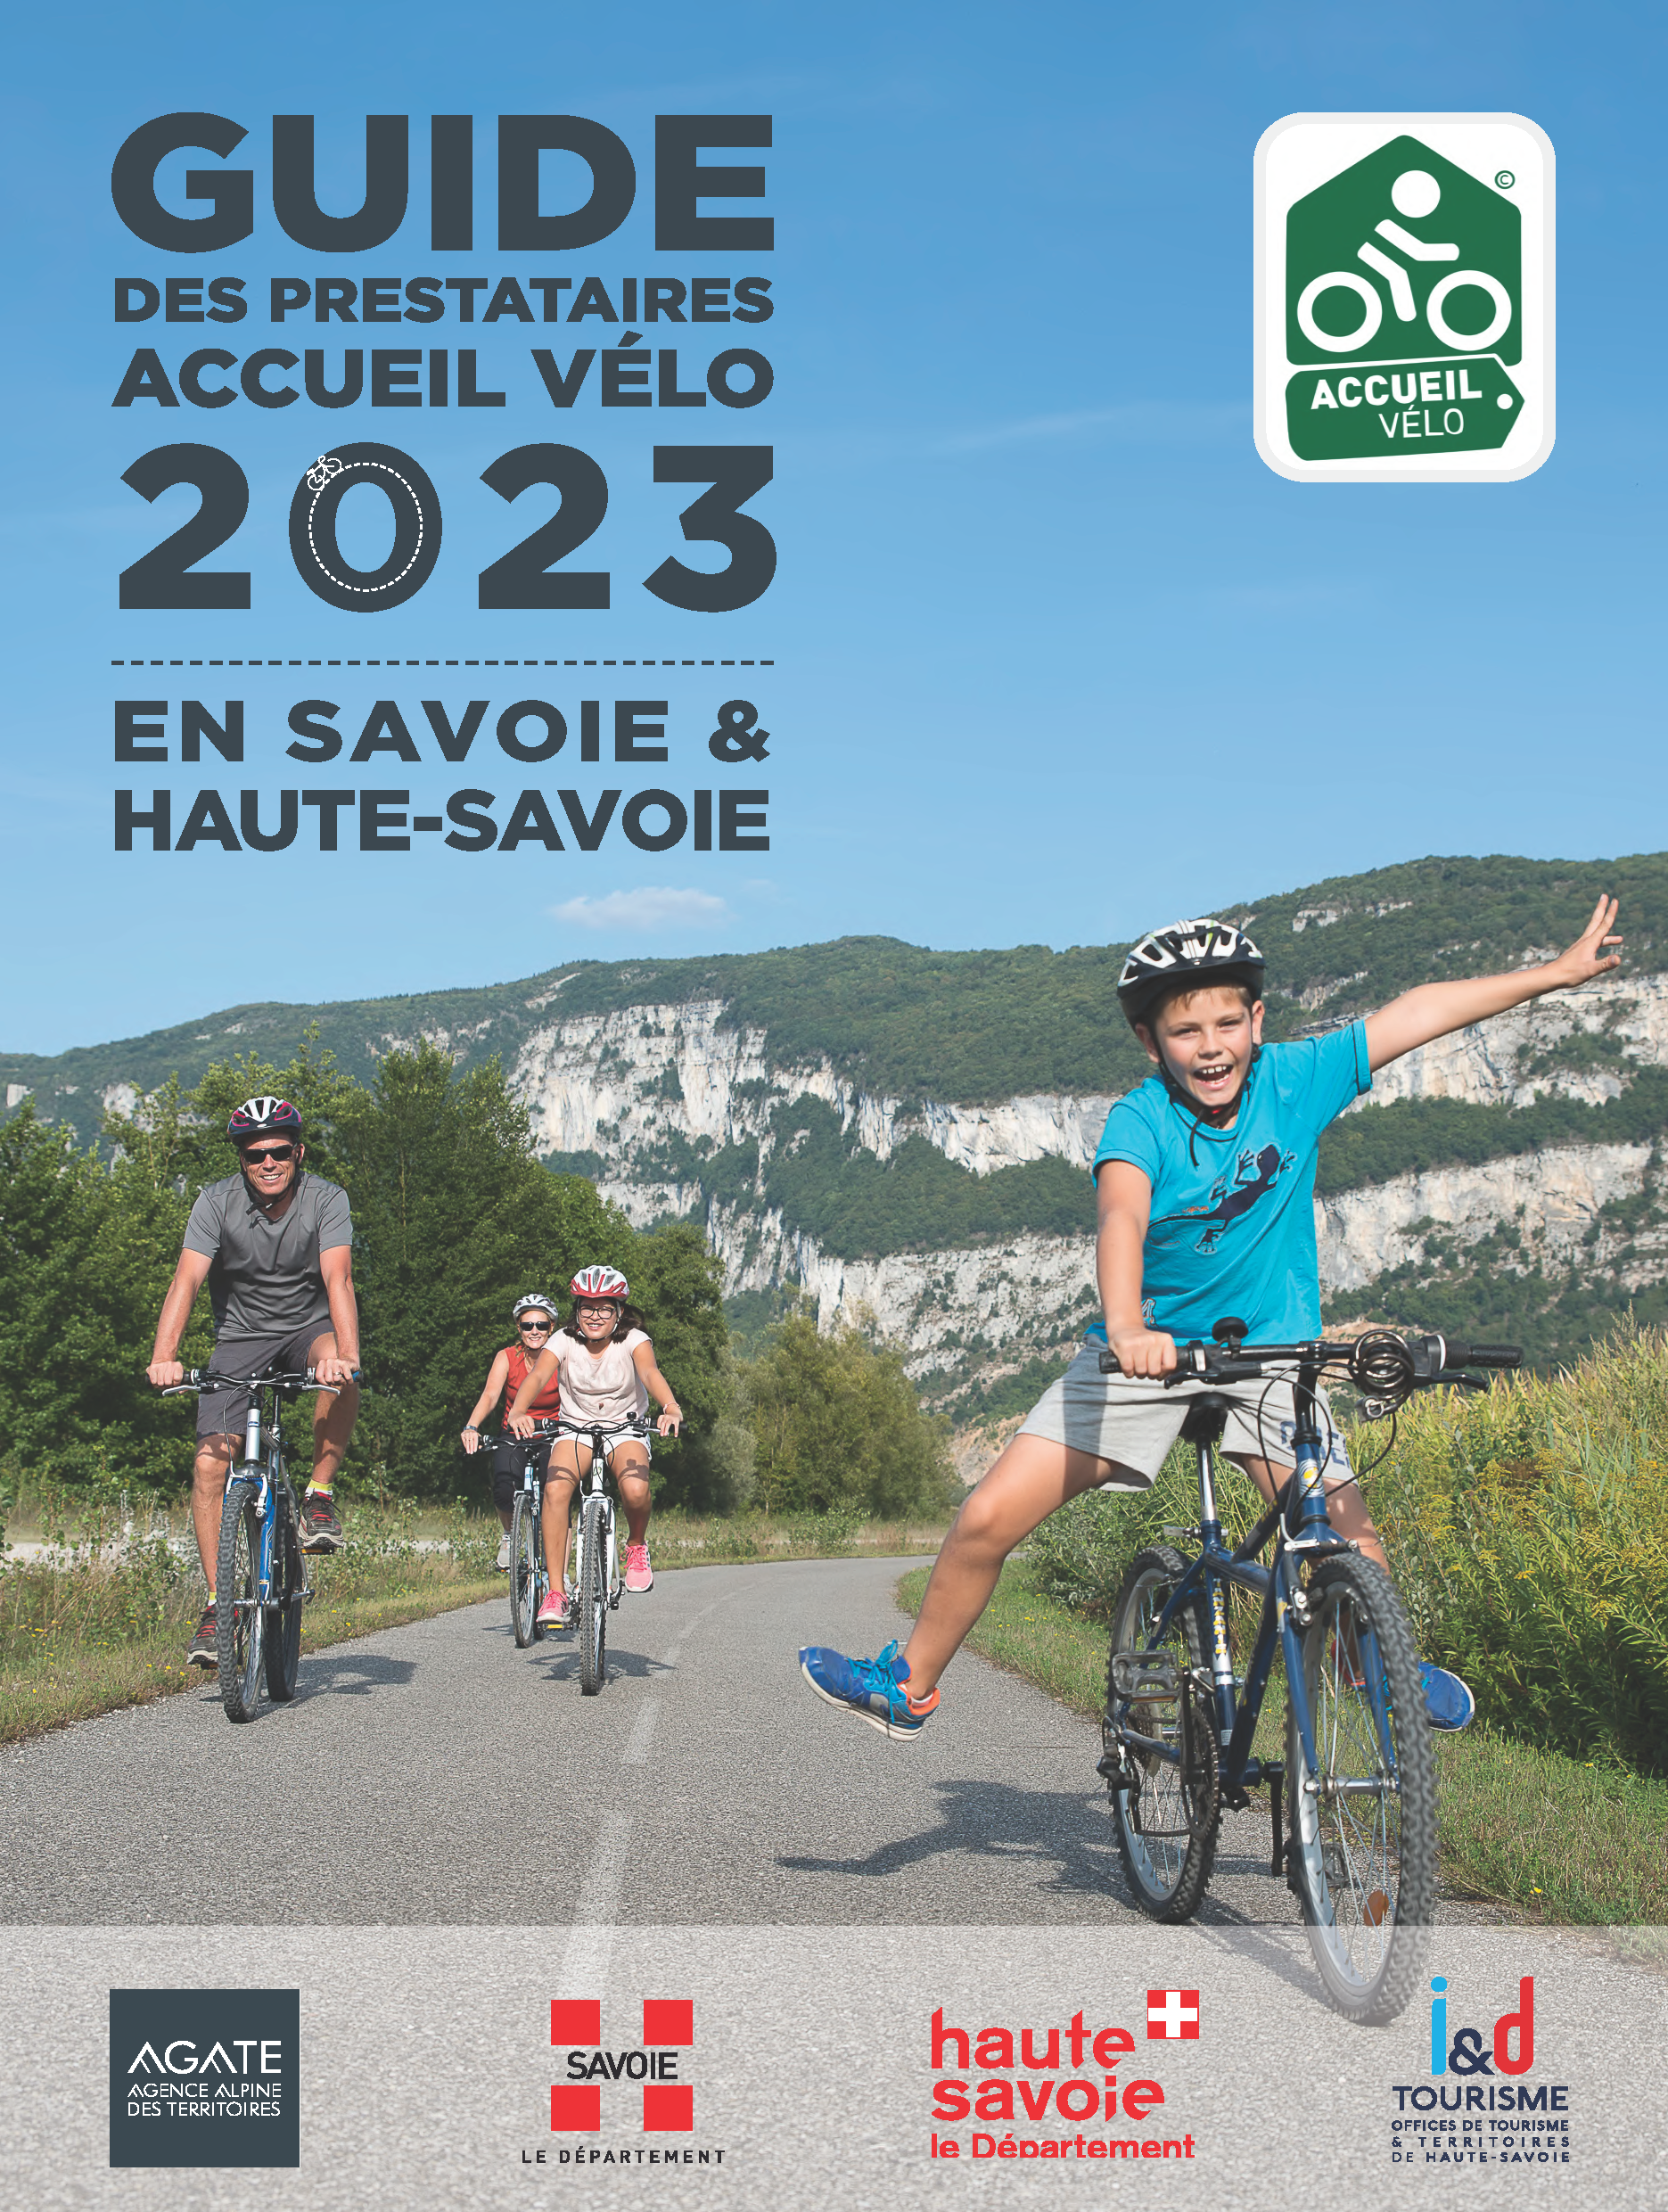 Guide des prestataires accueil vélo 2023